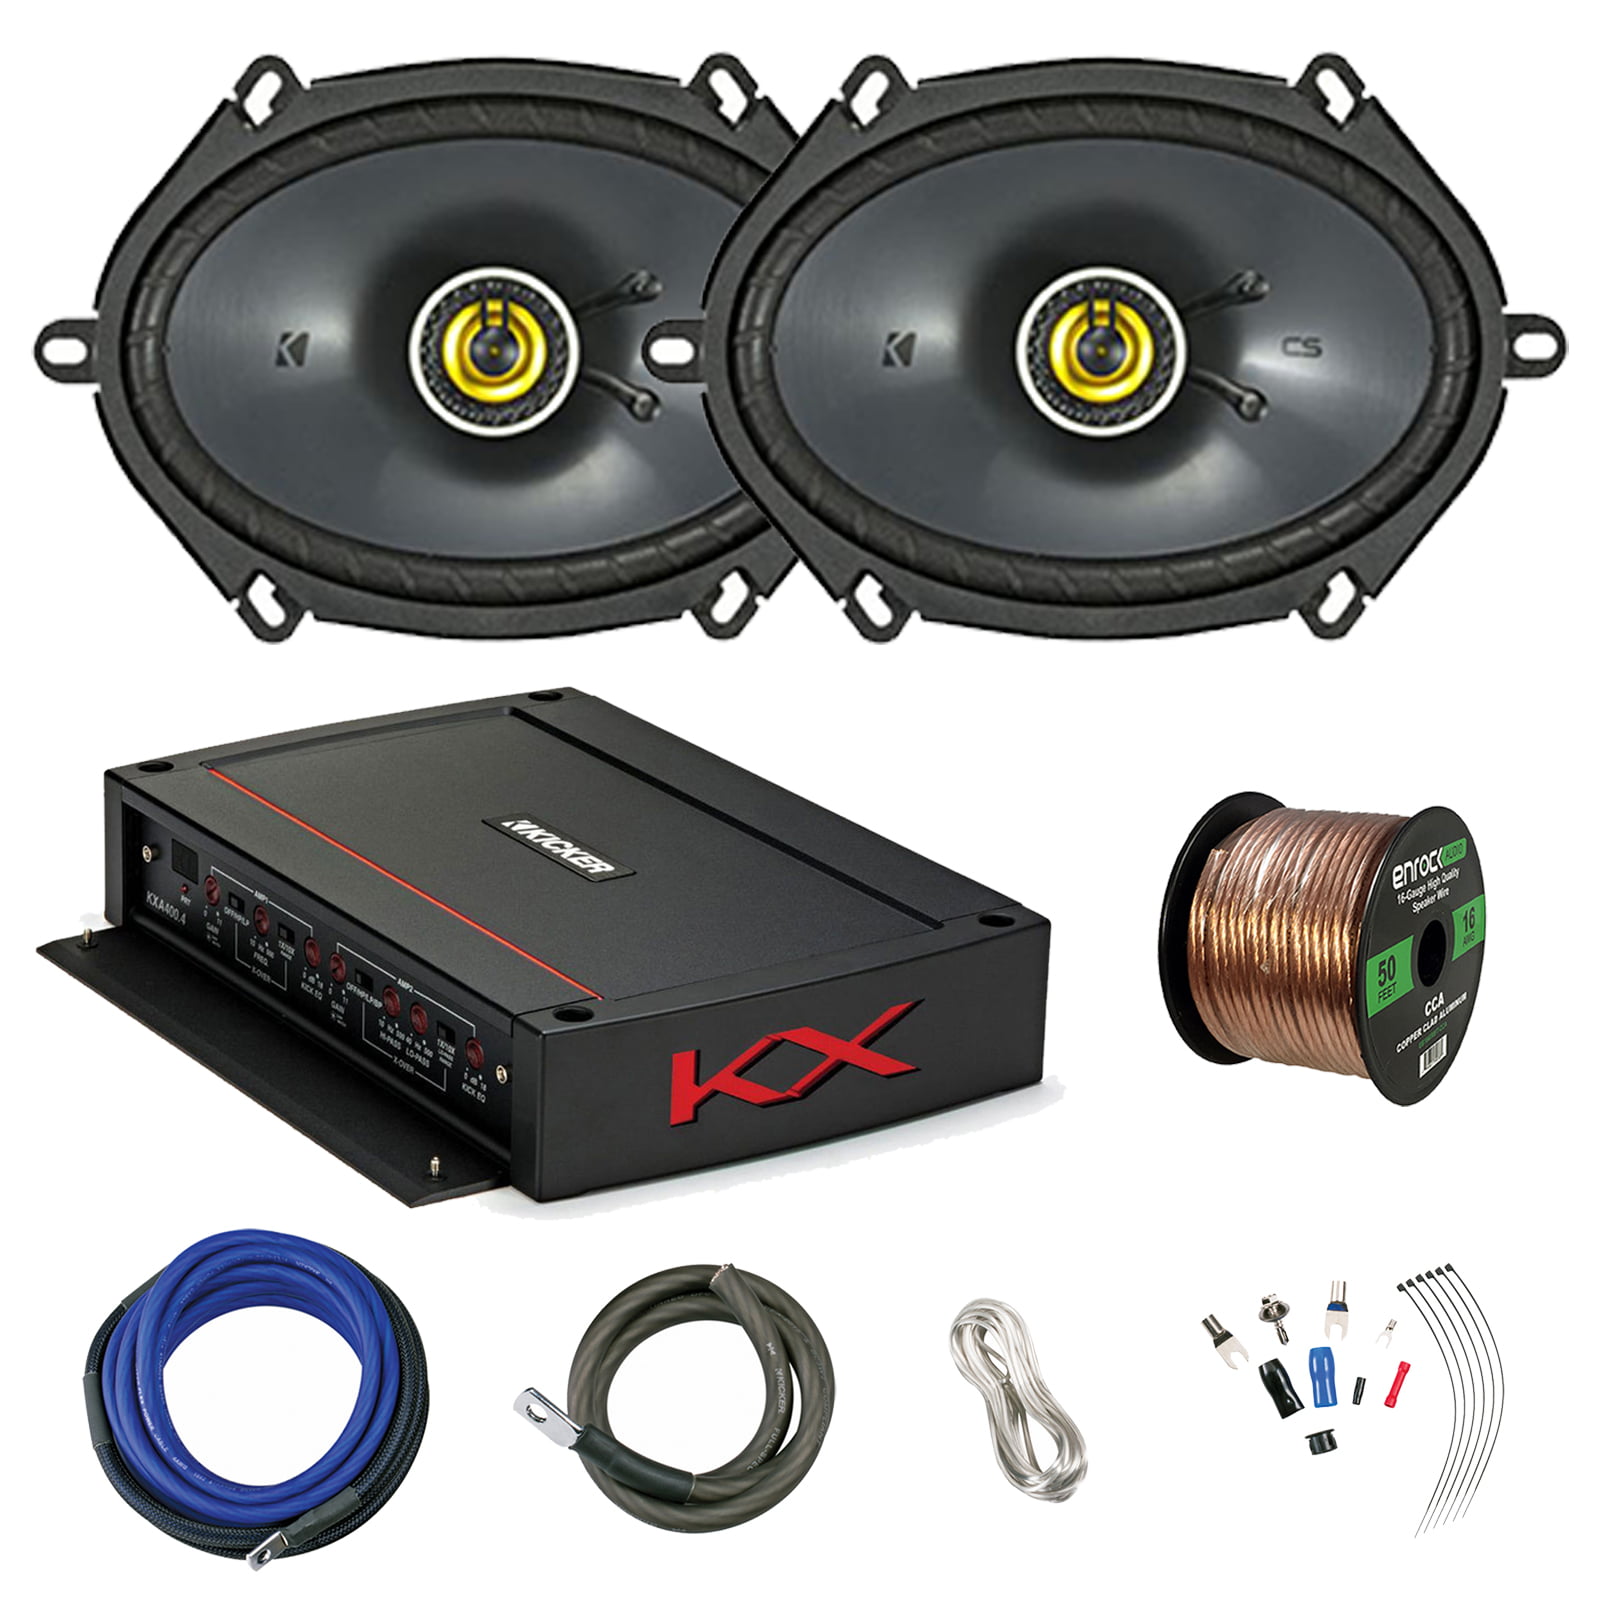 16 speaker amplifier